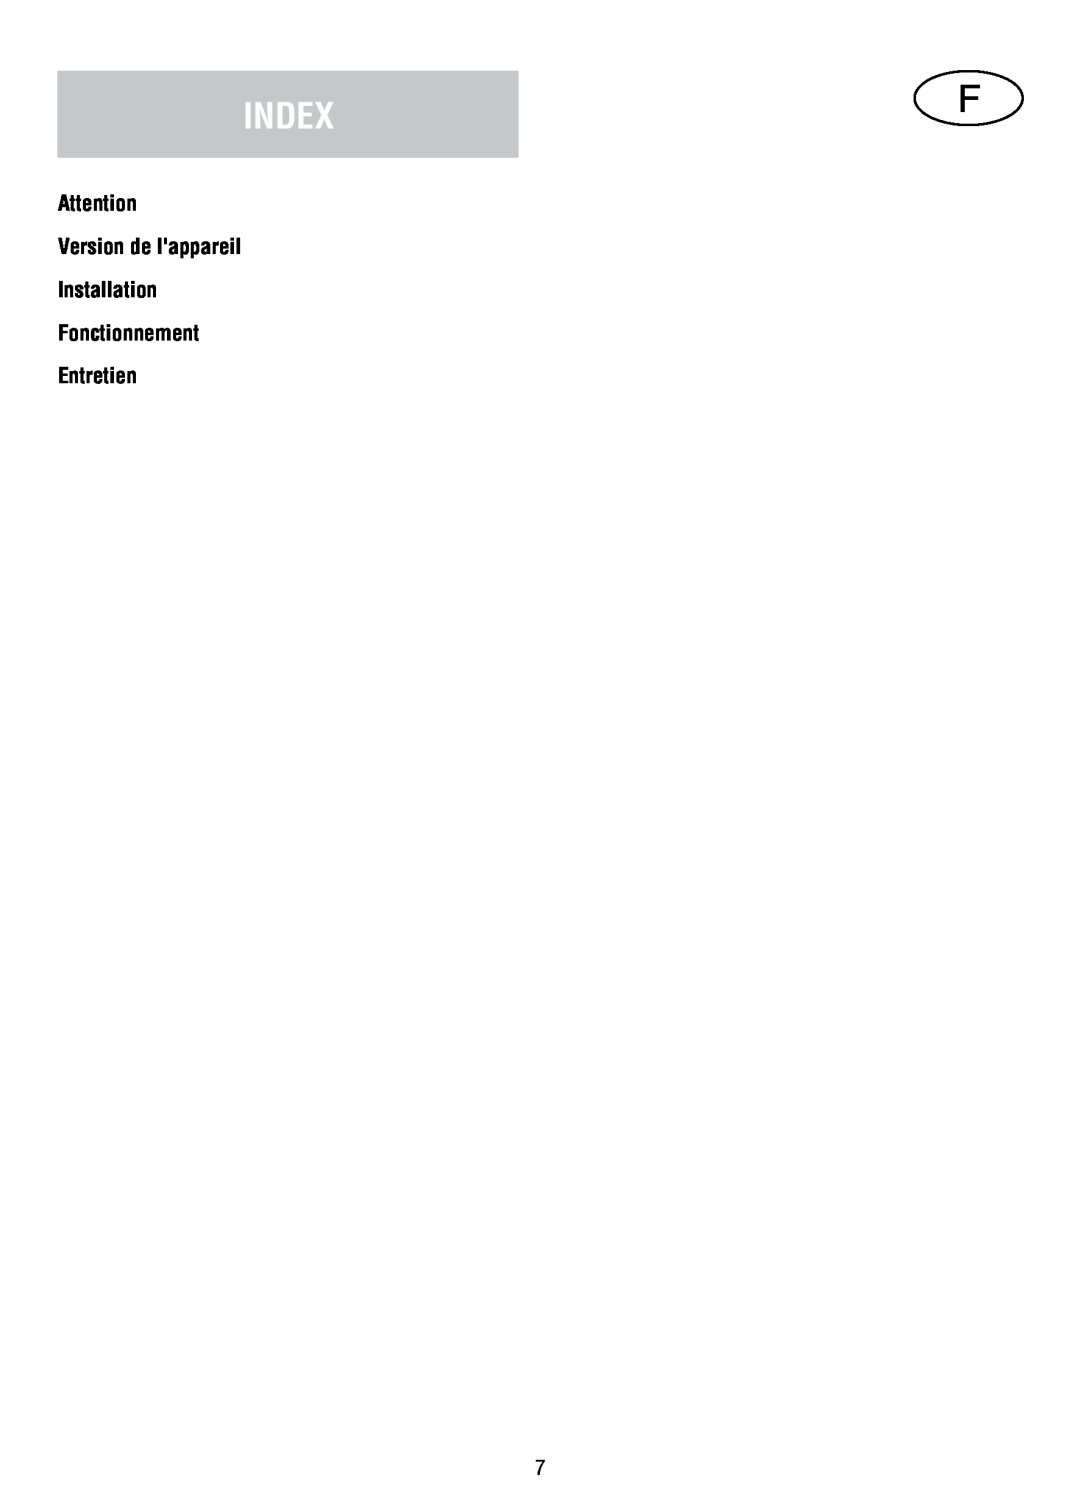 Fagor America SCFB-36 IX manual Index, Version de lappareil Installation Fonctionnement Entretien 